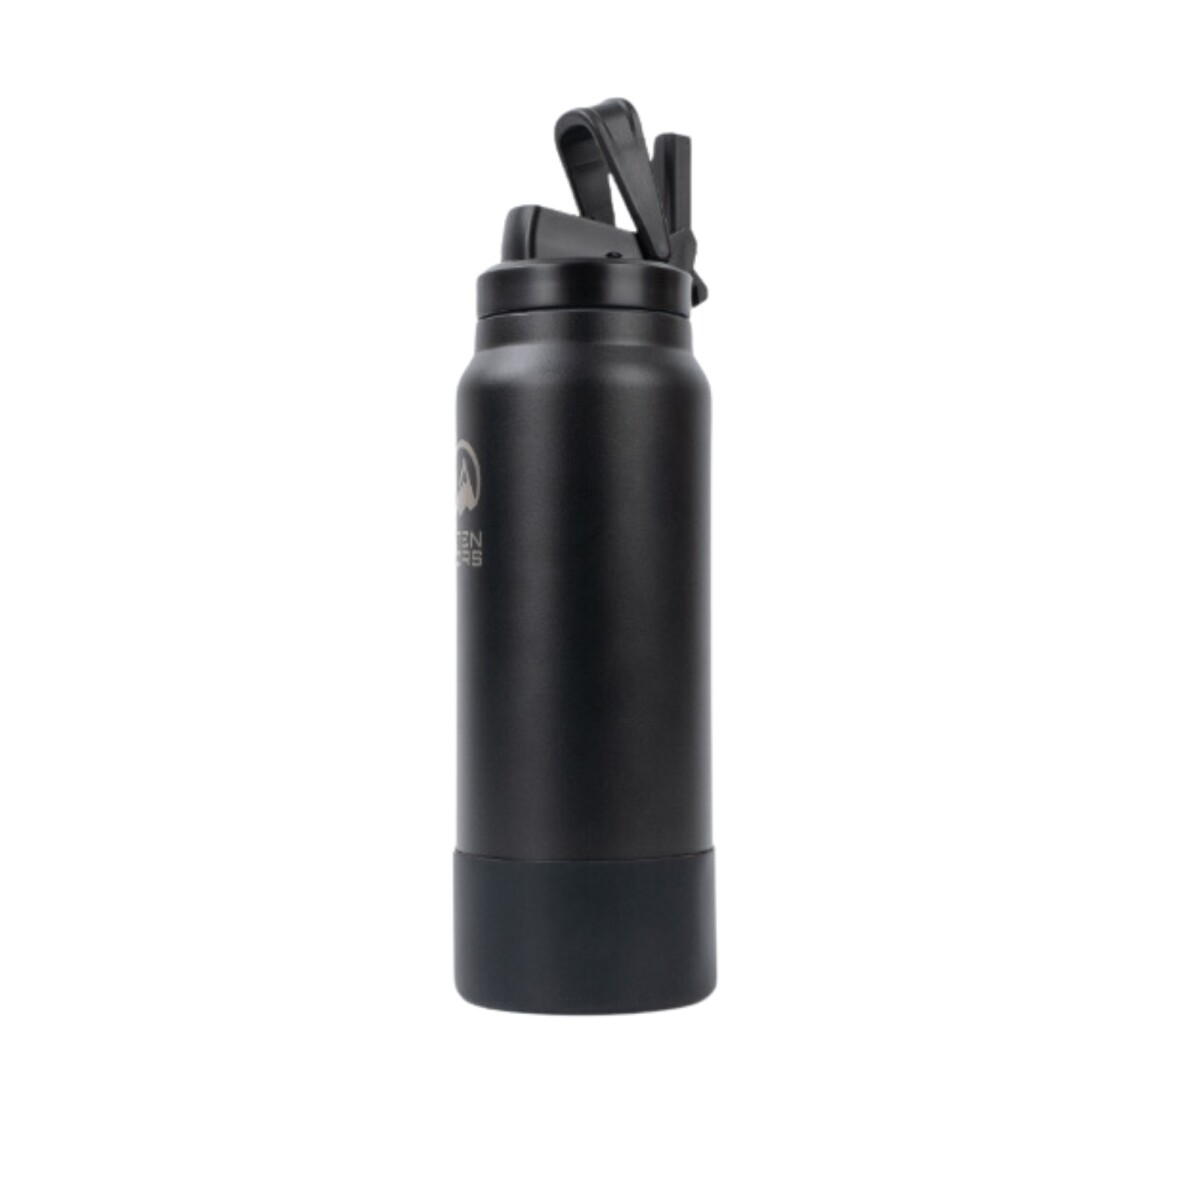 Bota de silicona Utendors para Botellon de 960ml - Negro 